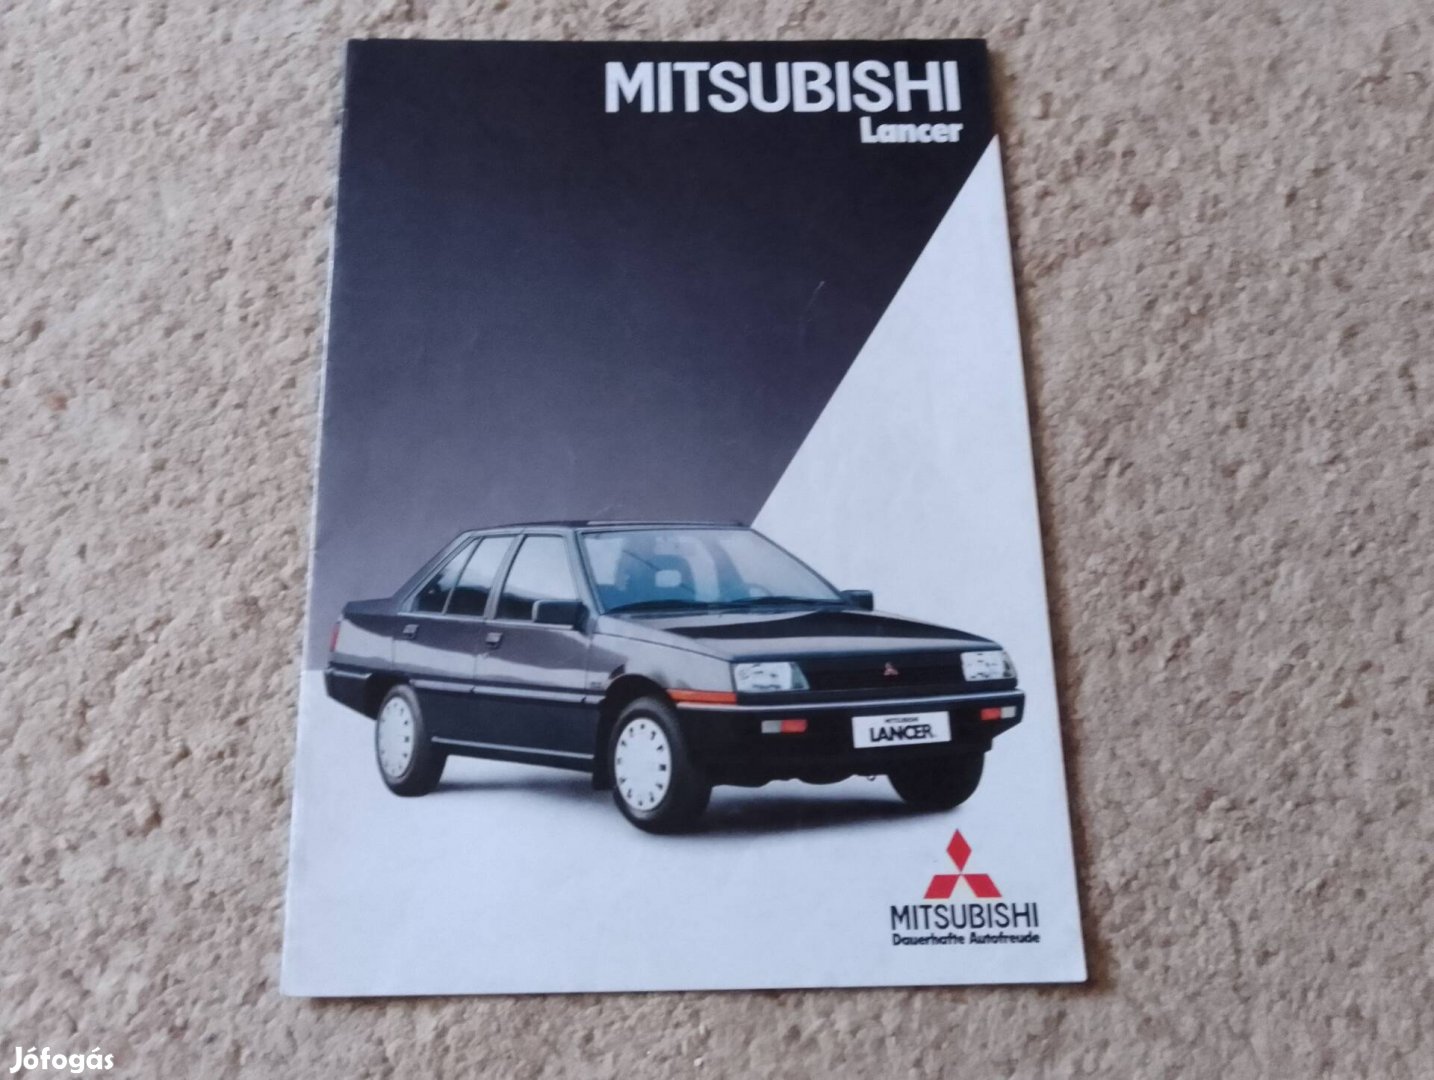 Mitsubishi Lancer (1984) prospektus, katalógus!